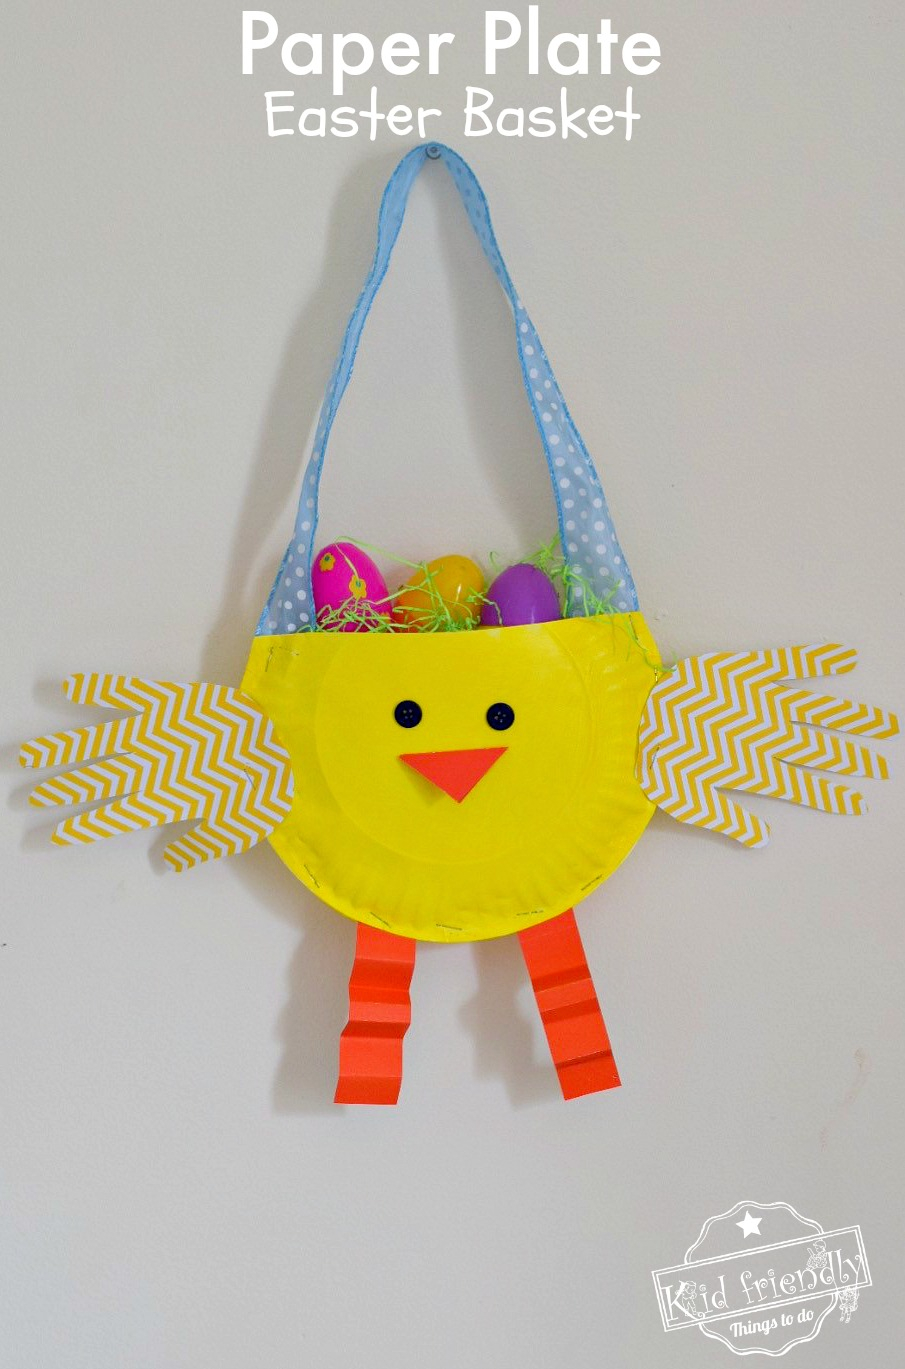 Origami Easter Basket Diy Paper Plate Chicken Easter Basket Craft For Kids